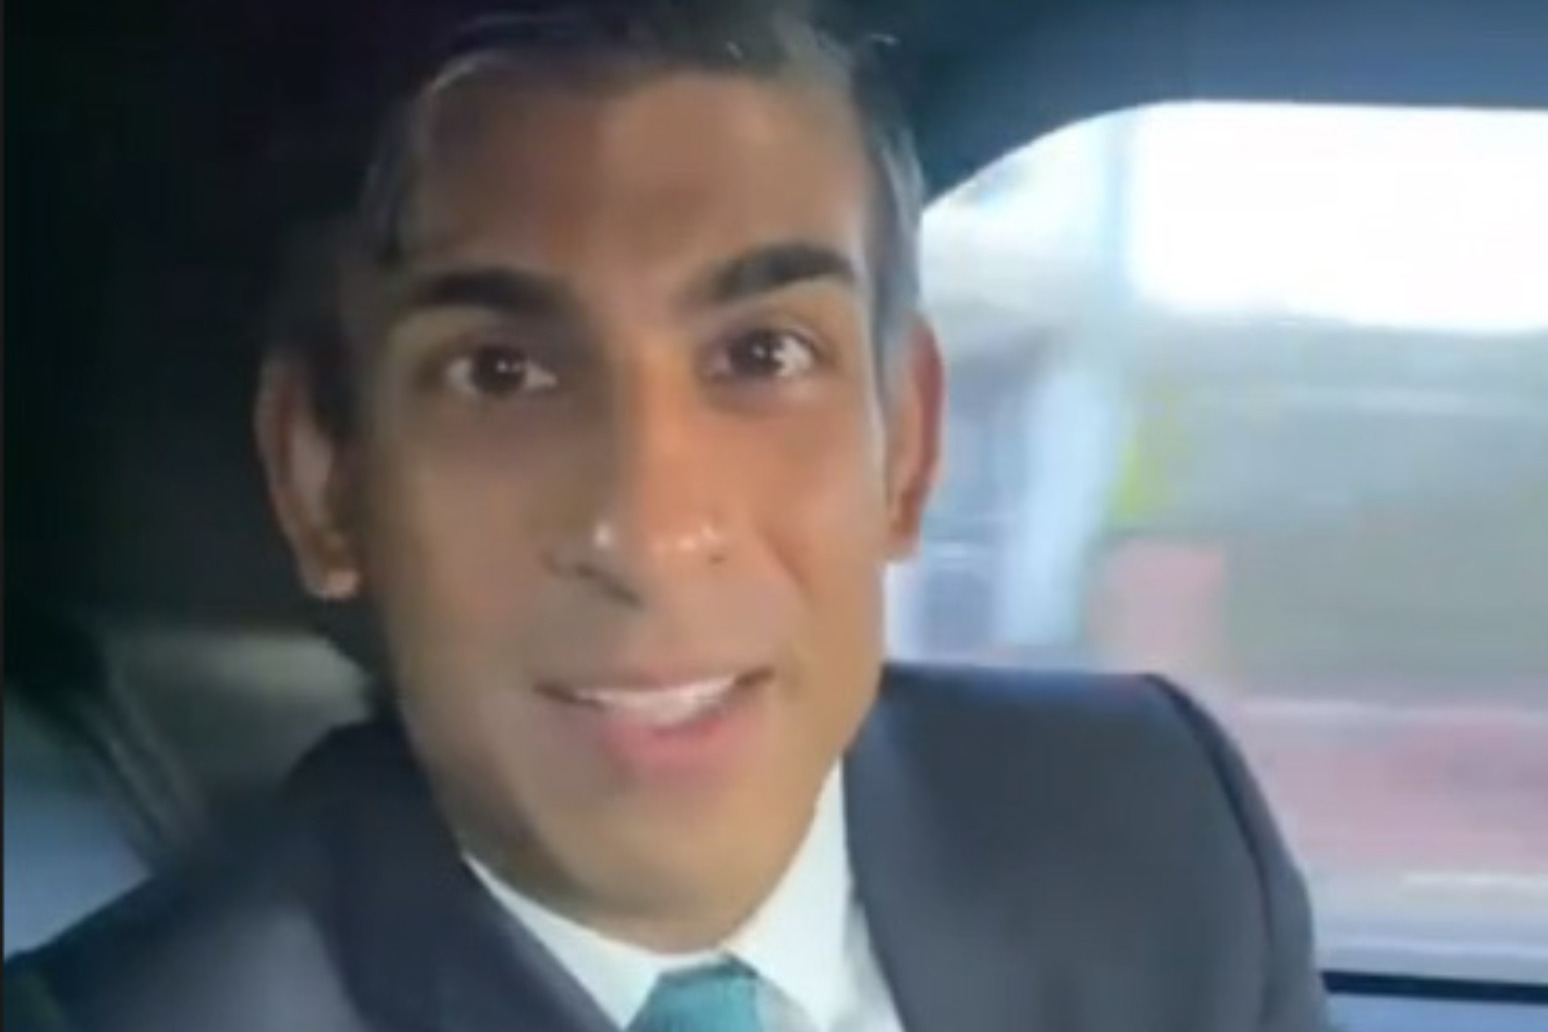 Sunak says sorry for seatbelt slip-up on social media video 